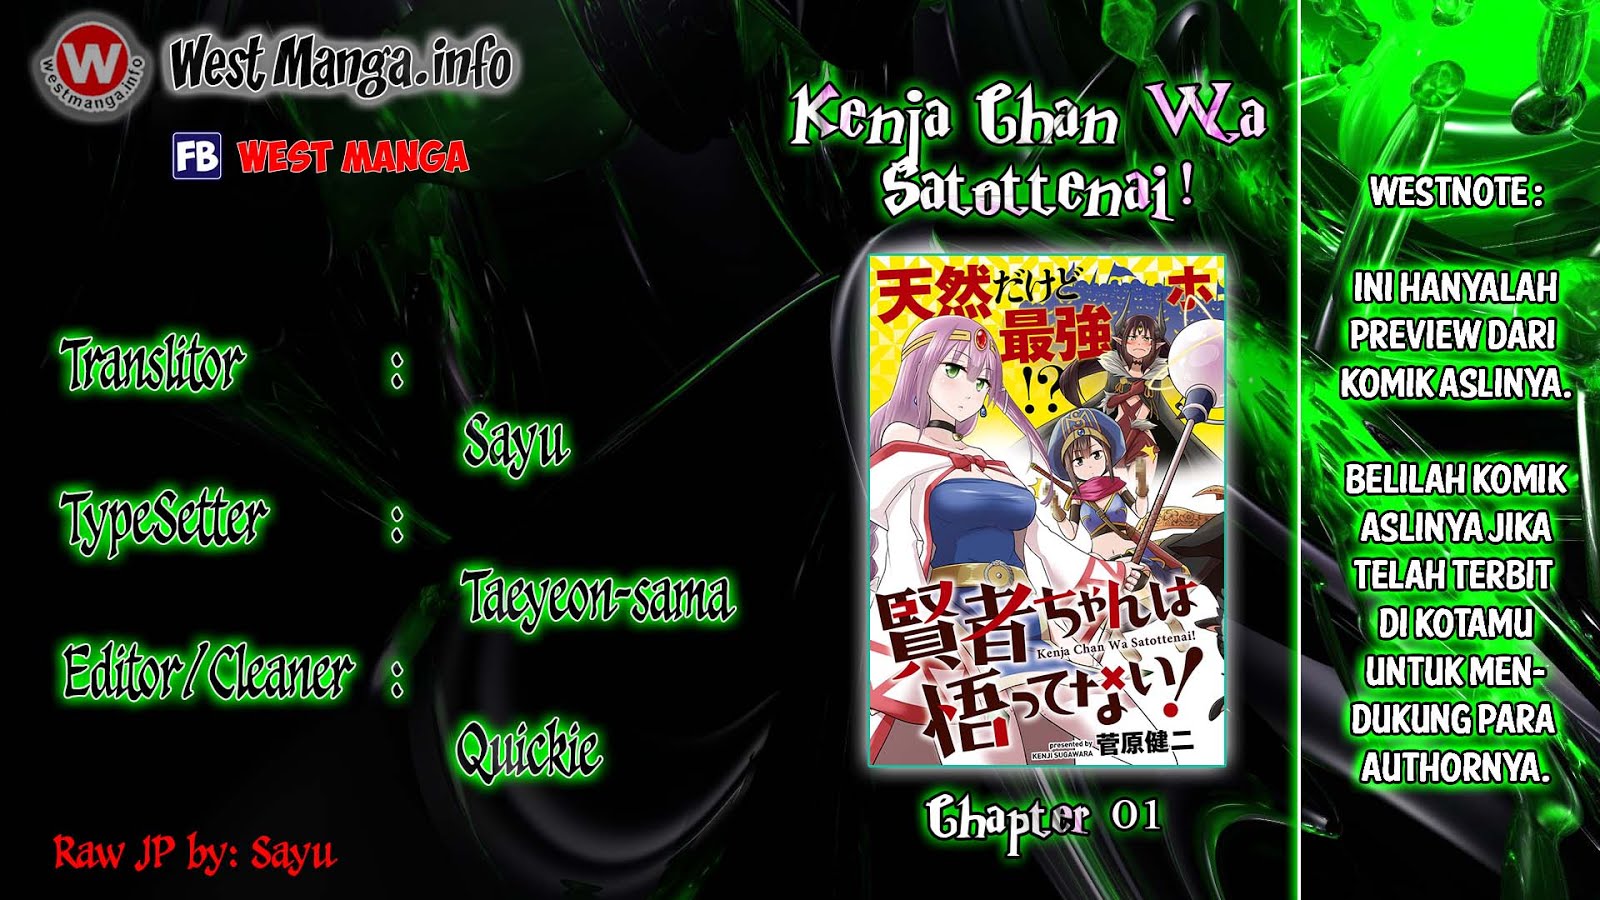 Kenja Chan Wa Satottenai! Chapter 01